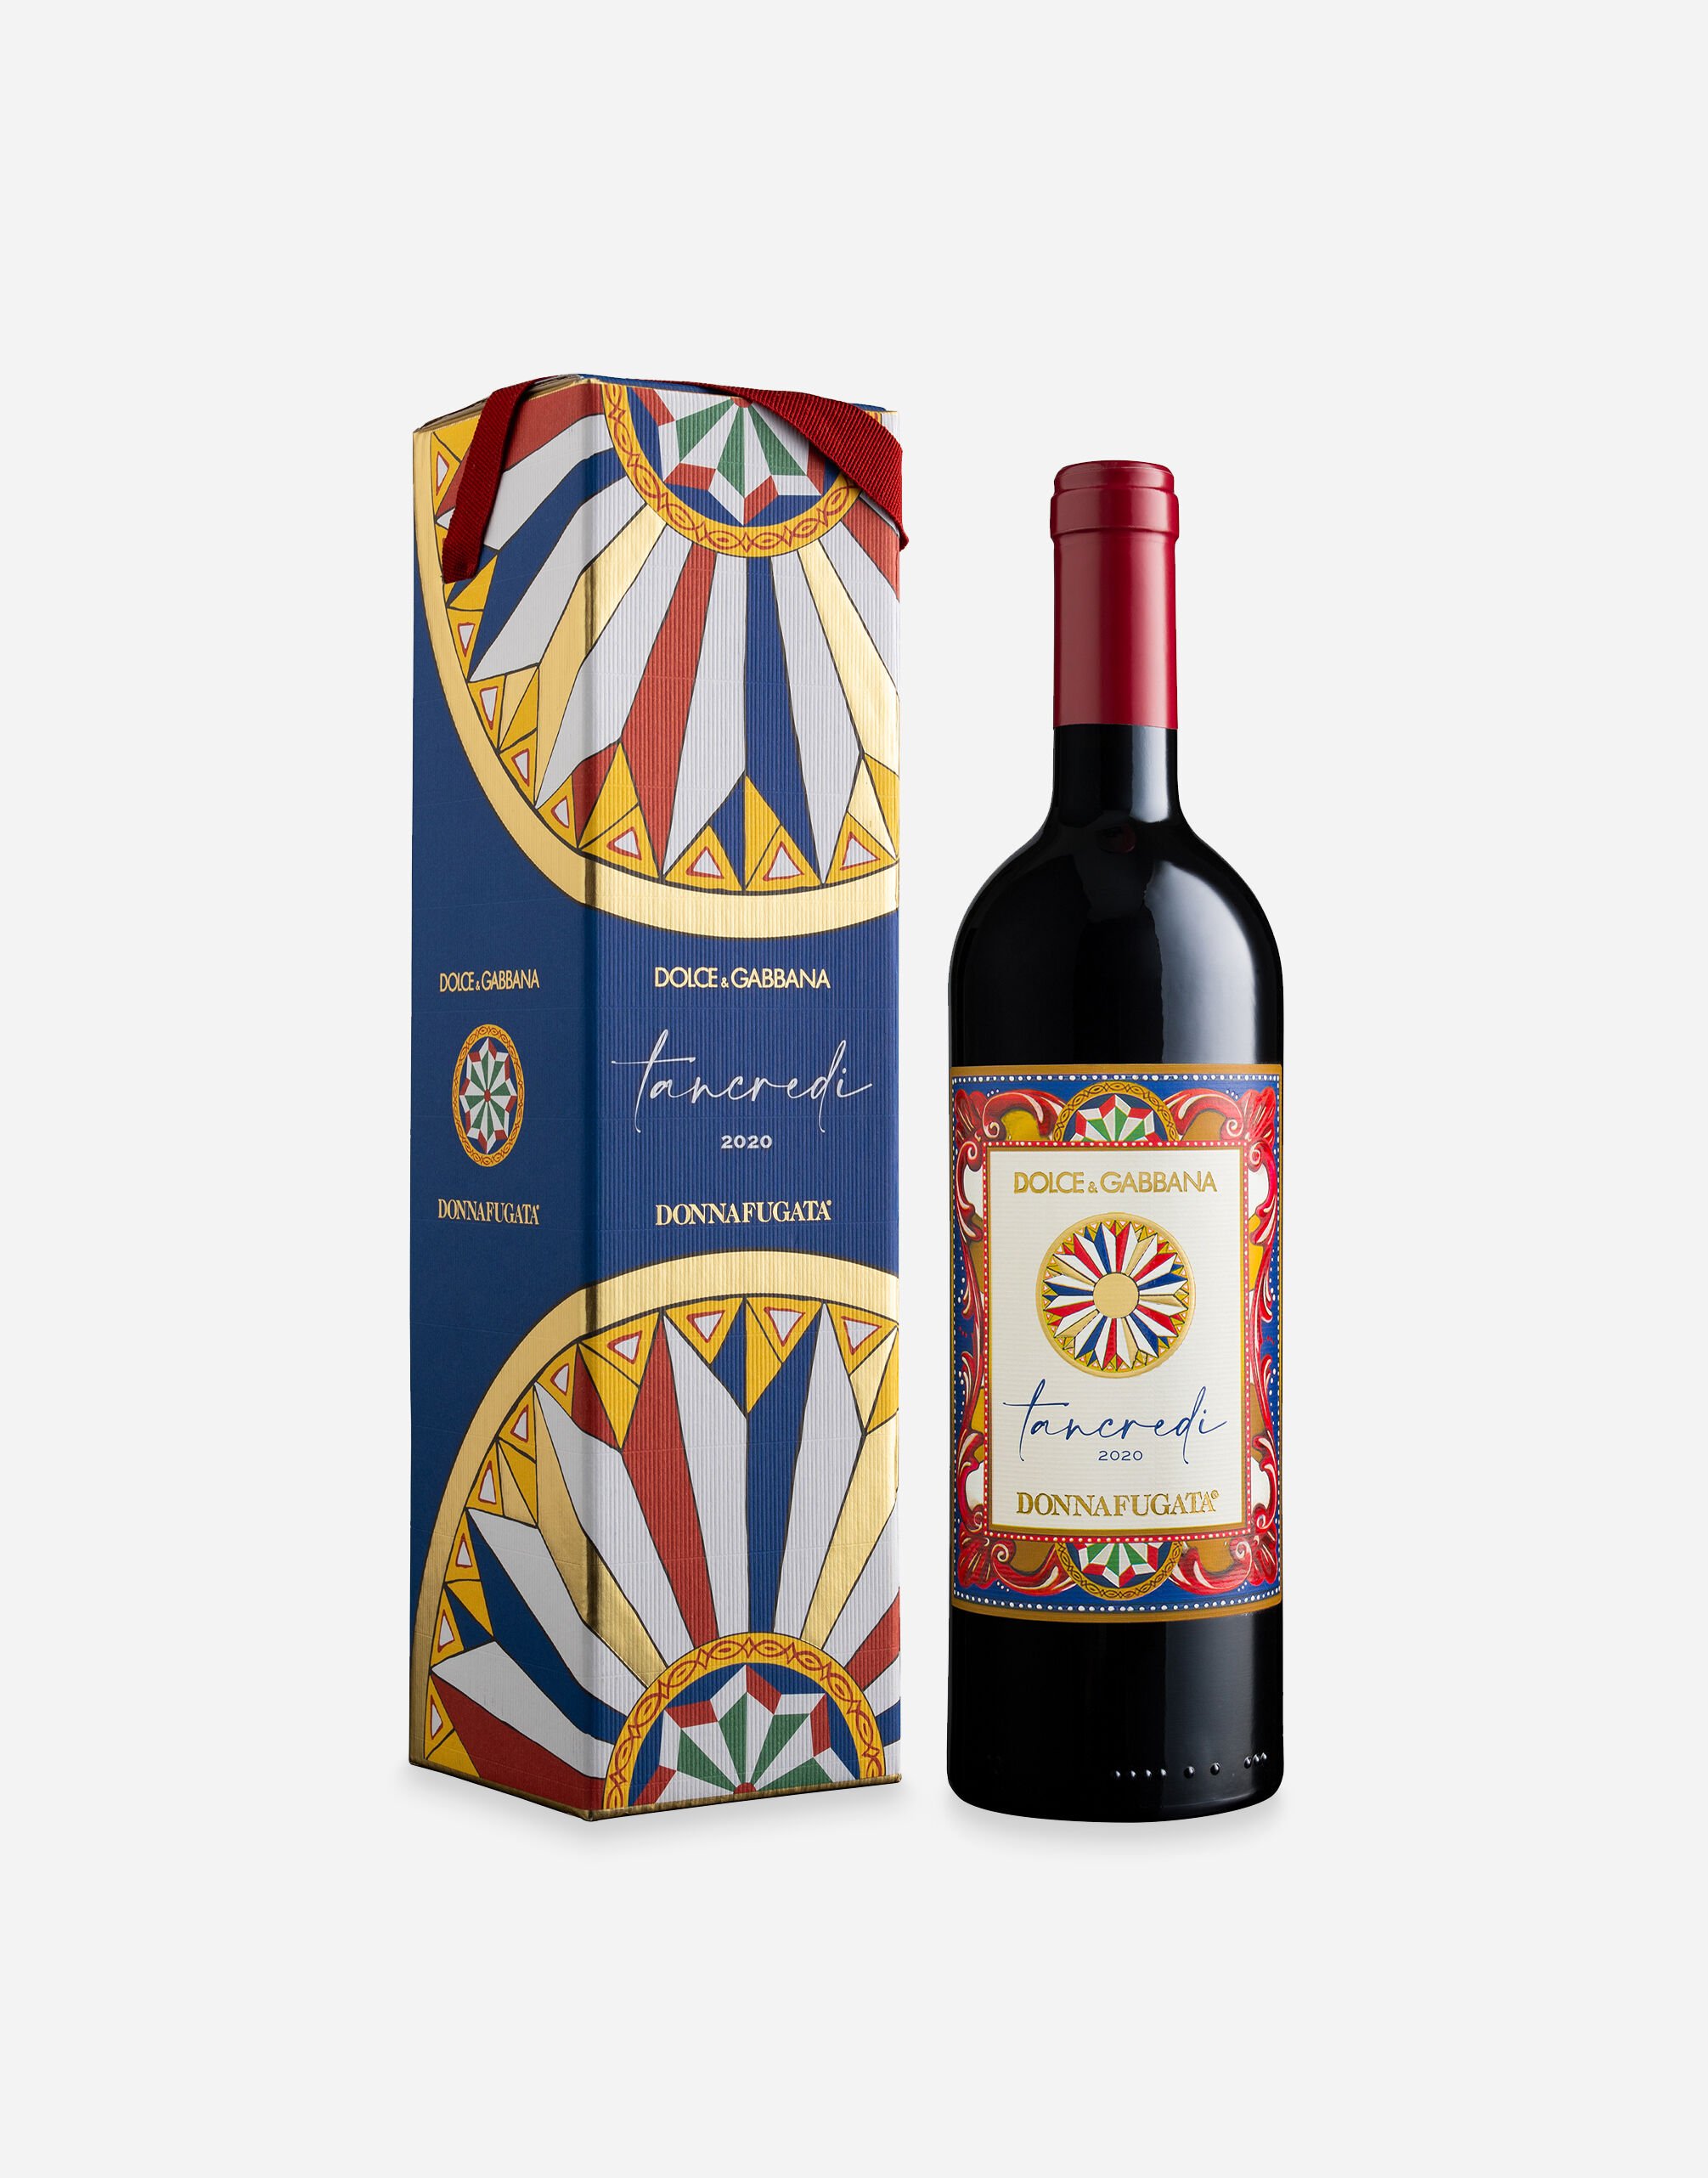 Dolce & Gabbana TANCREDI 2020 - Terre Siciliane IGT Rosso (0.75L) Single box Multicolor PW0221RES75